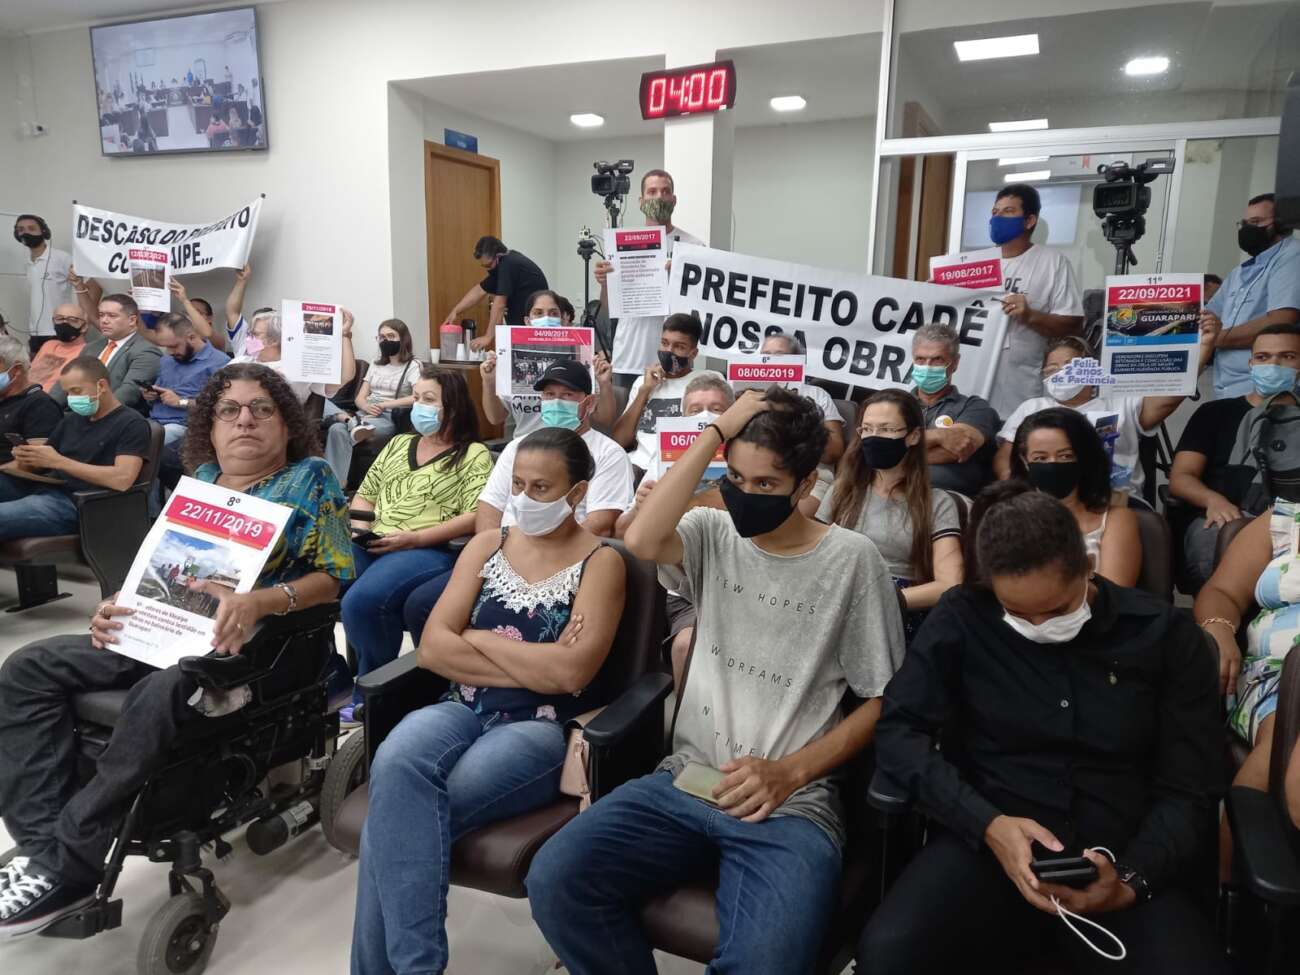 Câmara de Guarapari vira palco de manifestação contra atraso nas obras de Meaípe